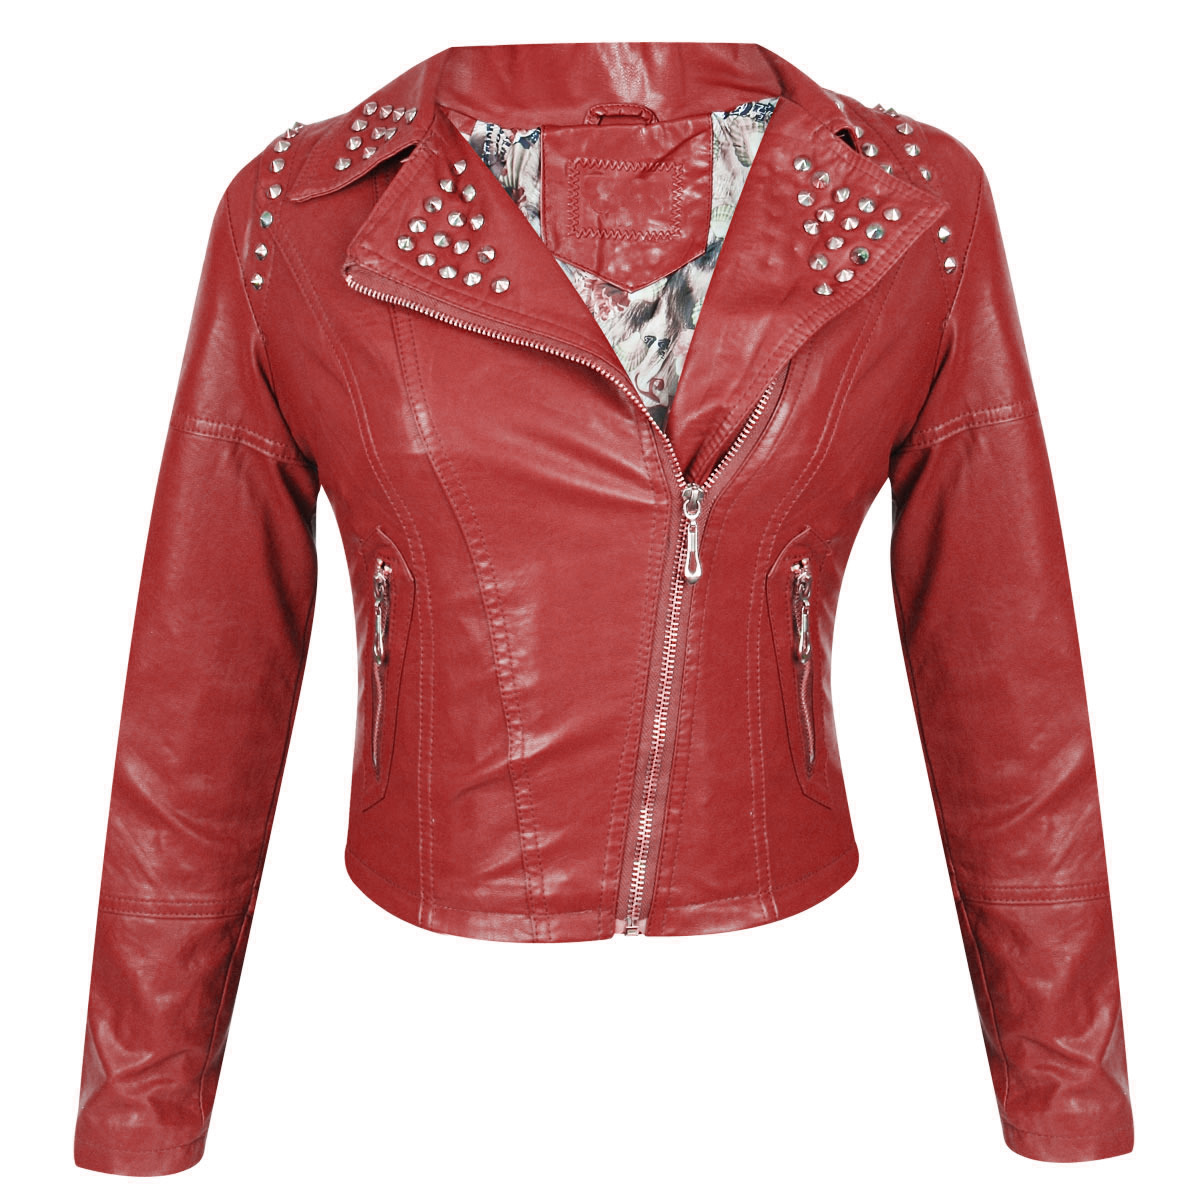 Red Color Genuine Biker Leather Jacket Silver Studded Slim Fit For ...